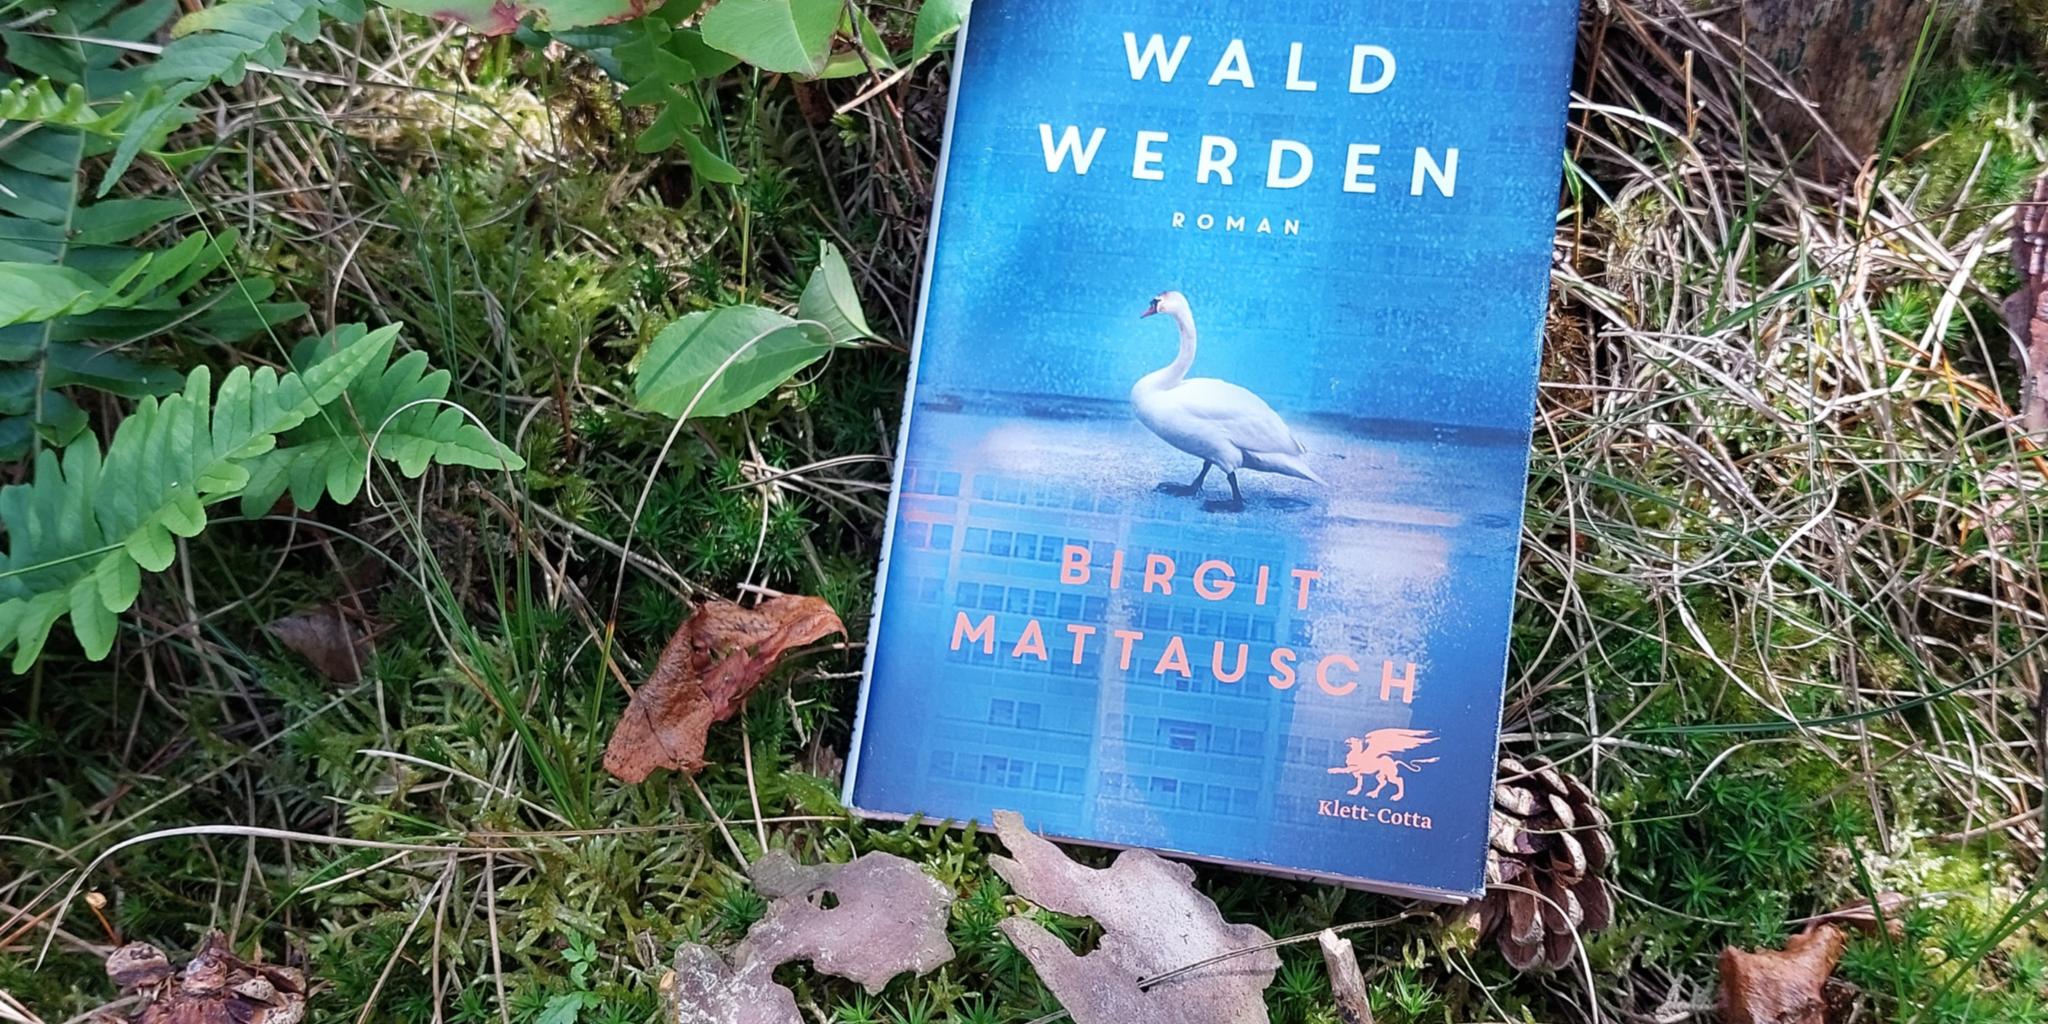 Buchcover 'Bis wir Wald werden' (Birgit Mattausch)